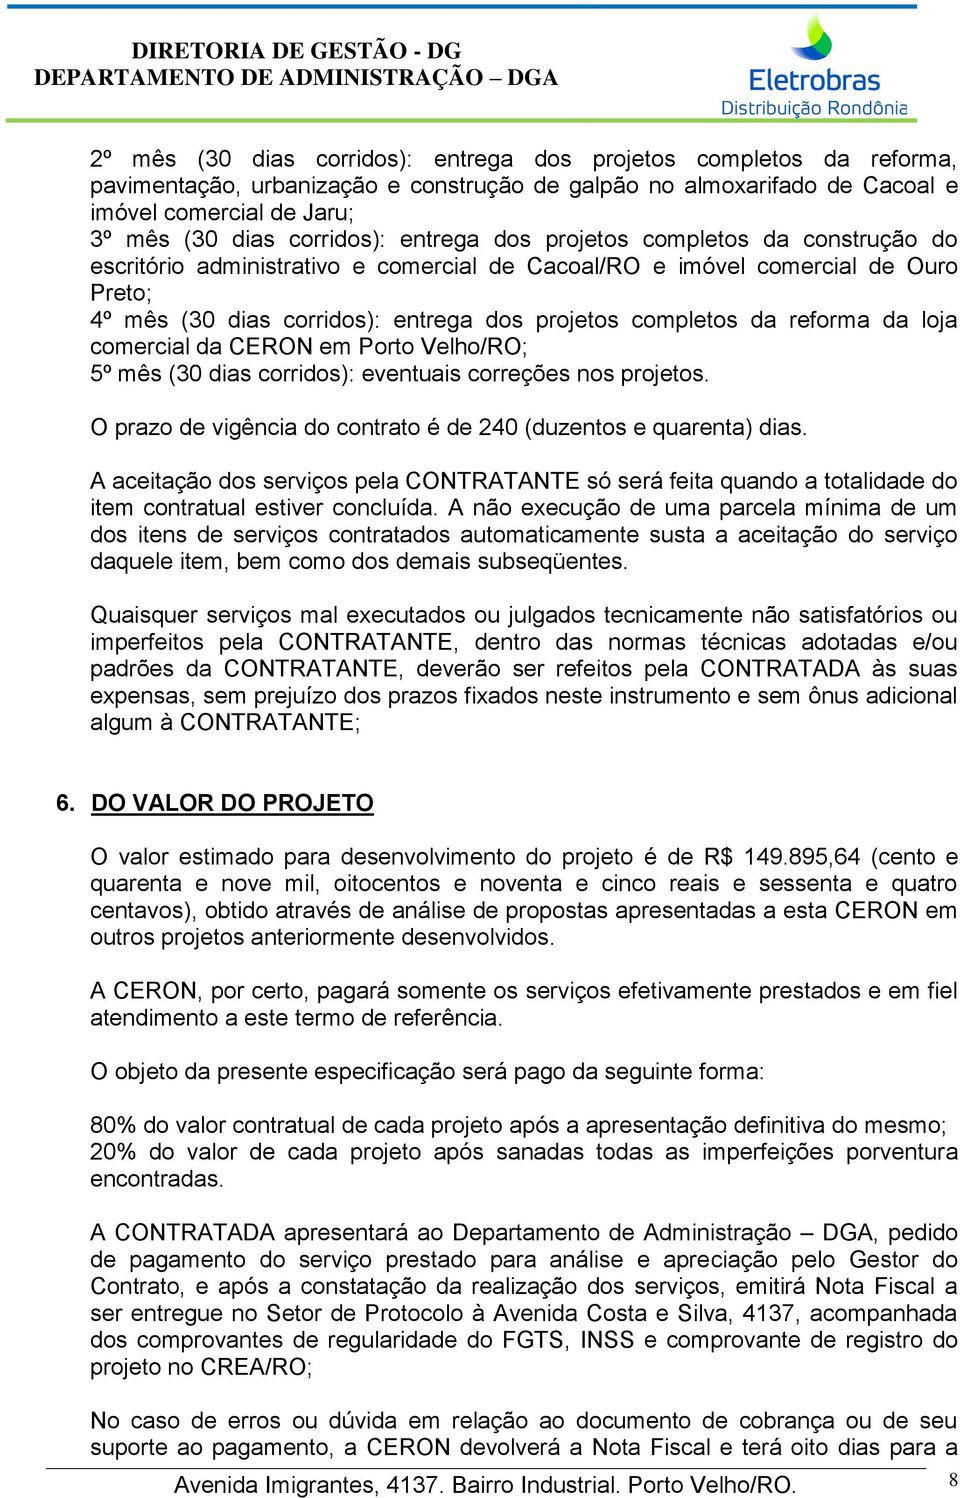 reforma da loja comercial da CERON em Porto Velho/RO; 5º mês (30 dias corridos): eventuais correções nos projetos. O prazo de vigência do contrato é de 240 (duzentos e quarenta) dias.